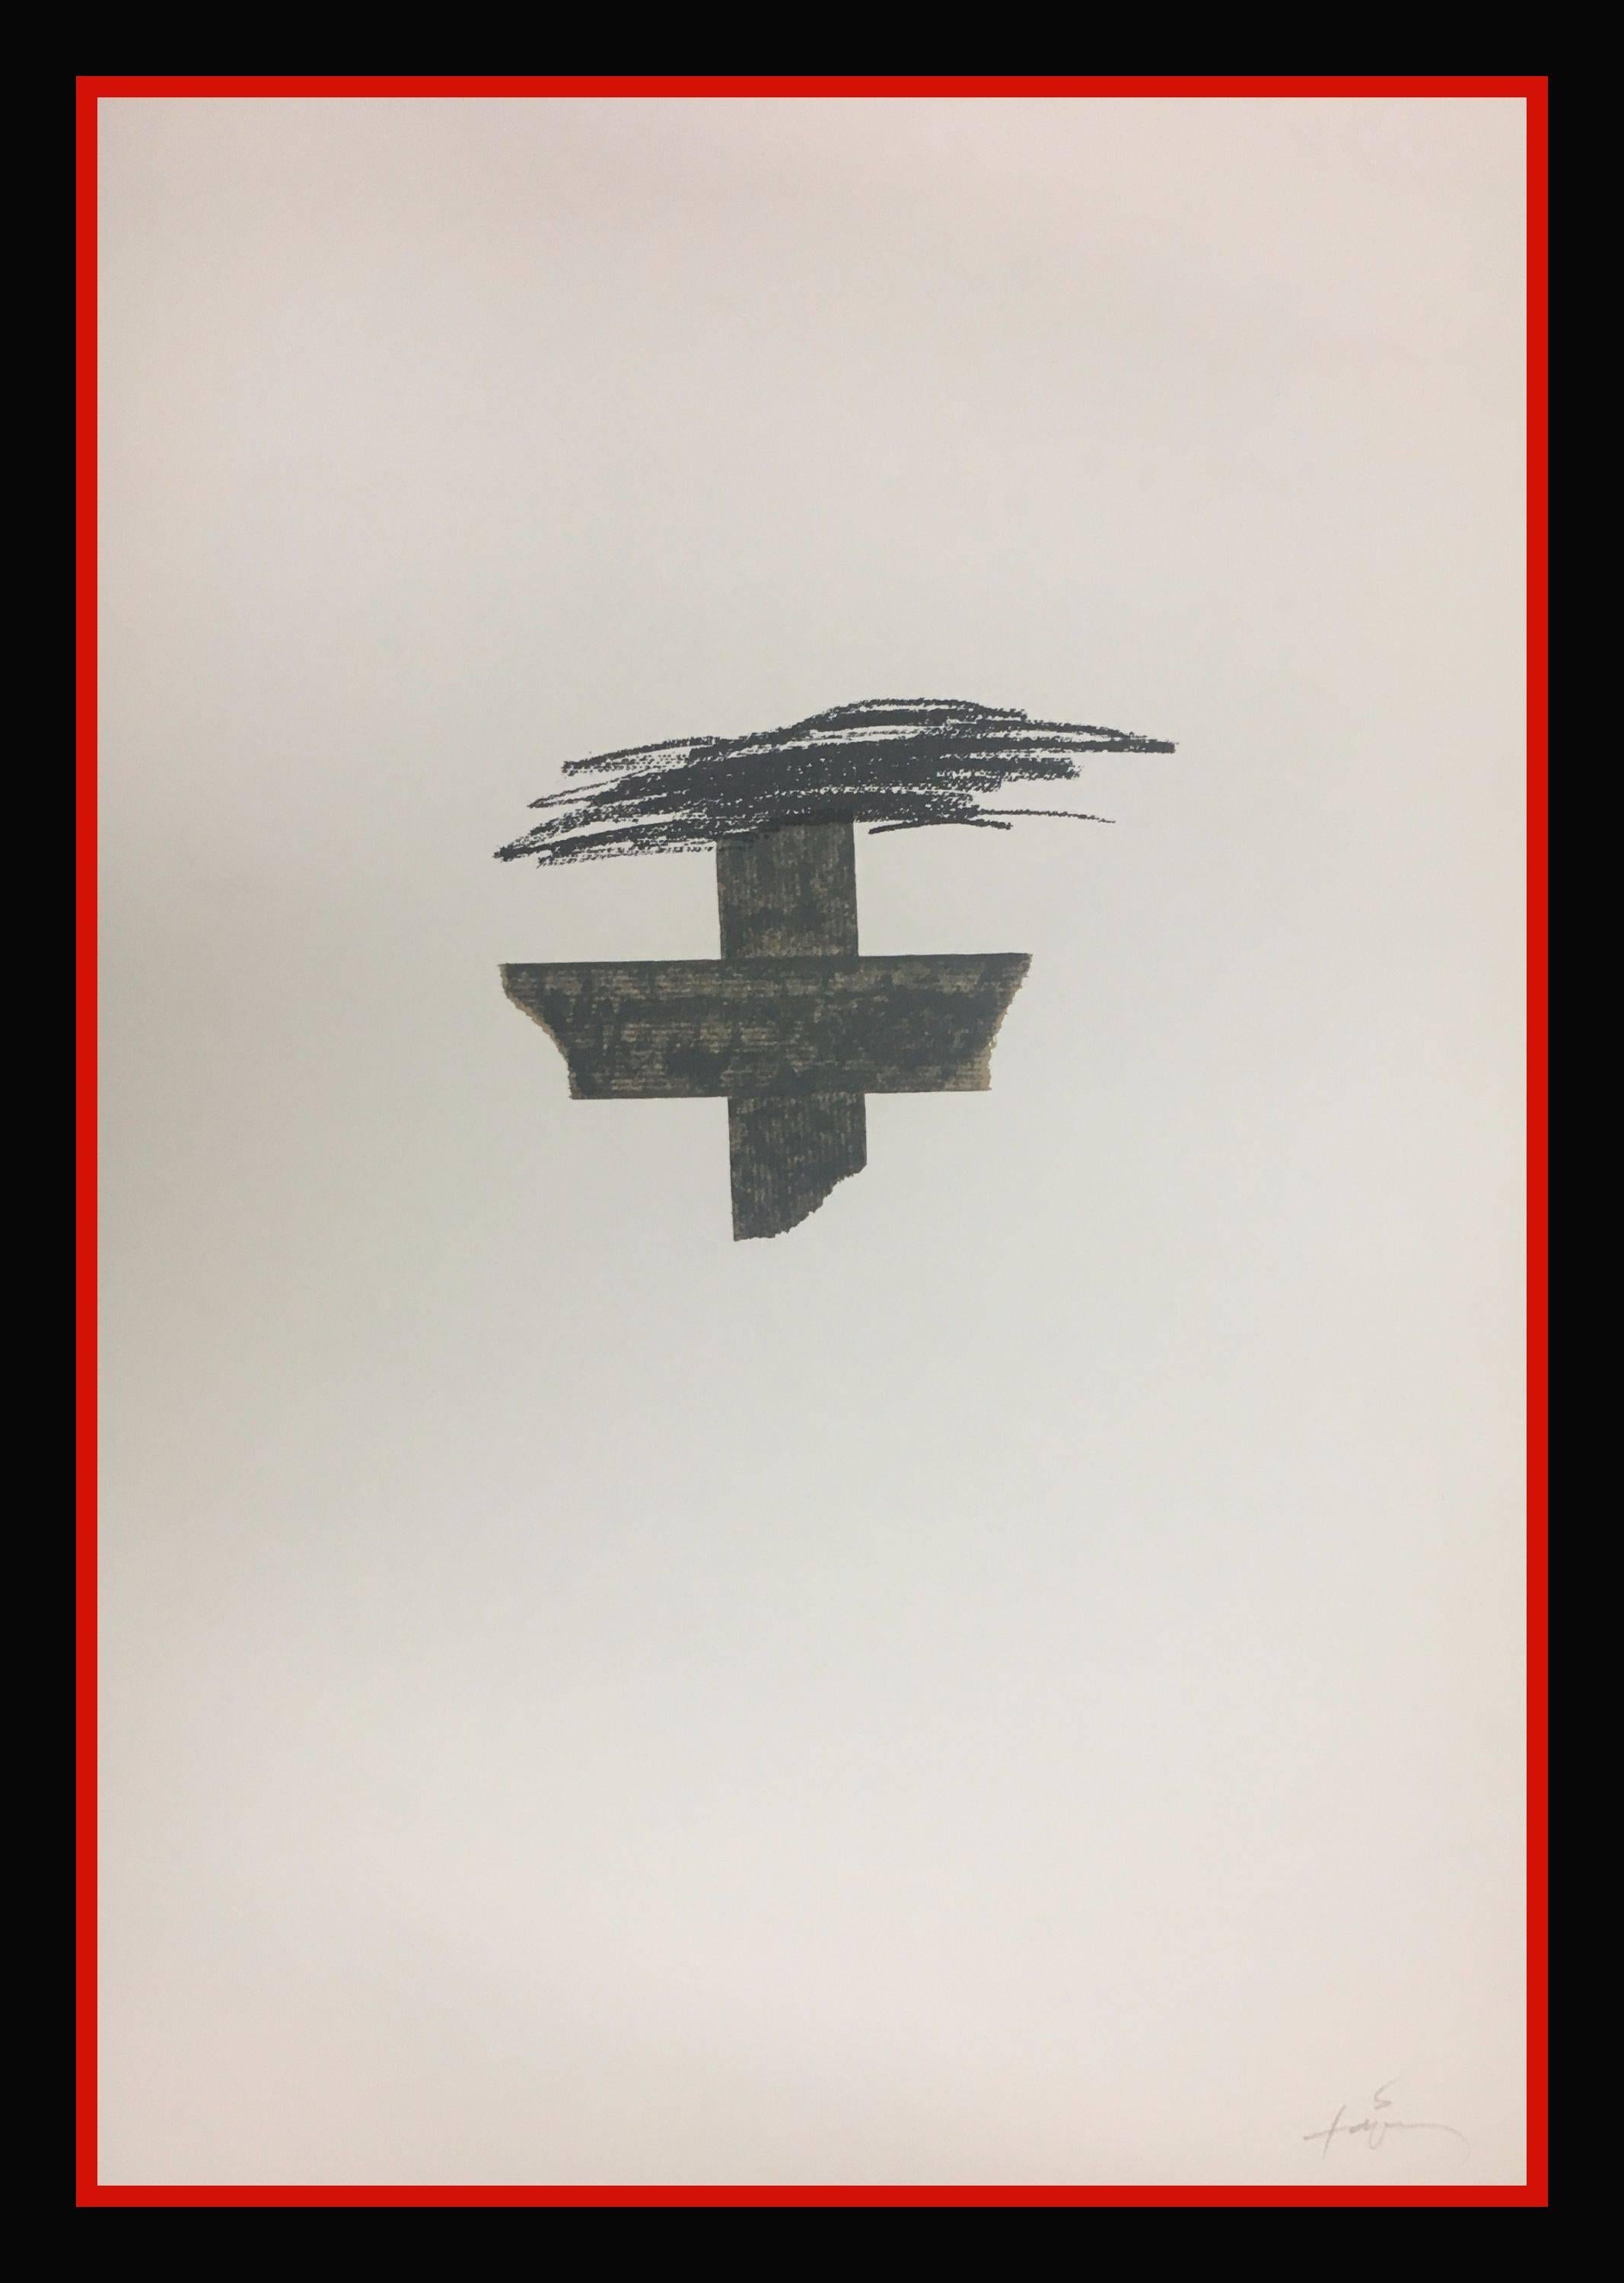 Abstract Print Antoni Tàpies - Tapies  Croix noire  Peinture de lithographie originale verticale de 1975